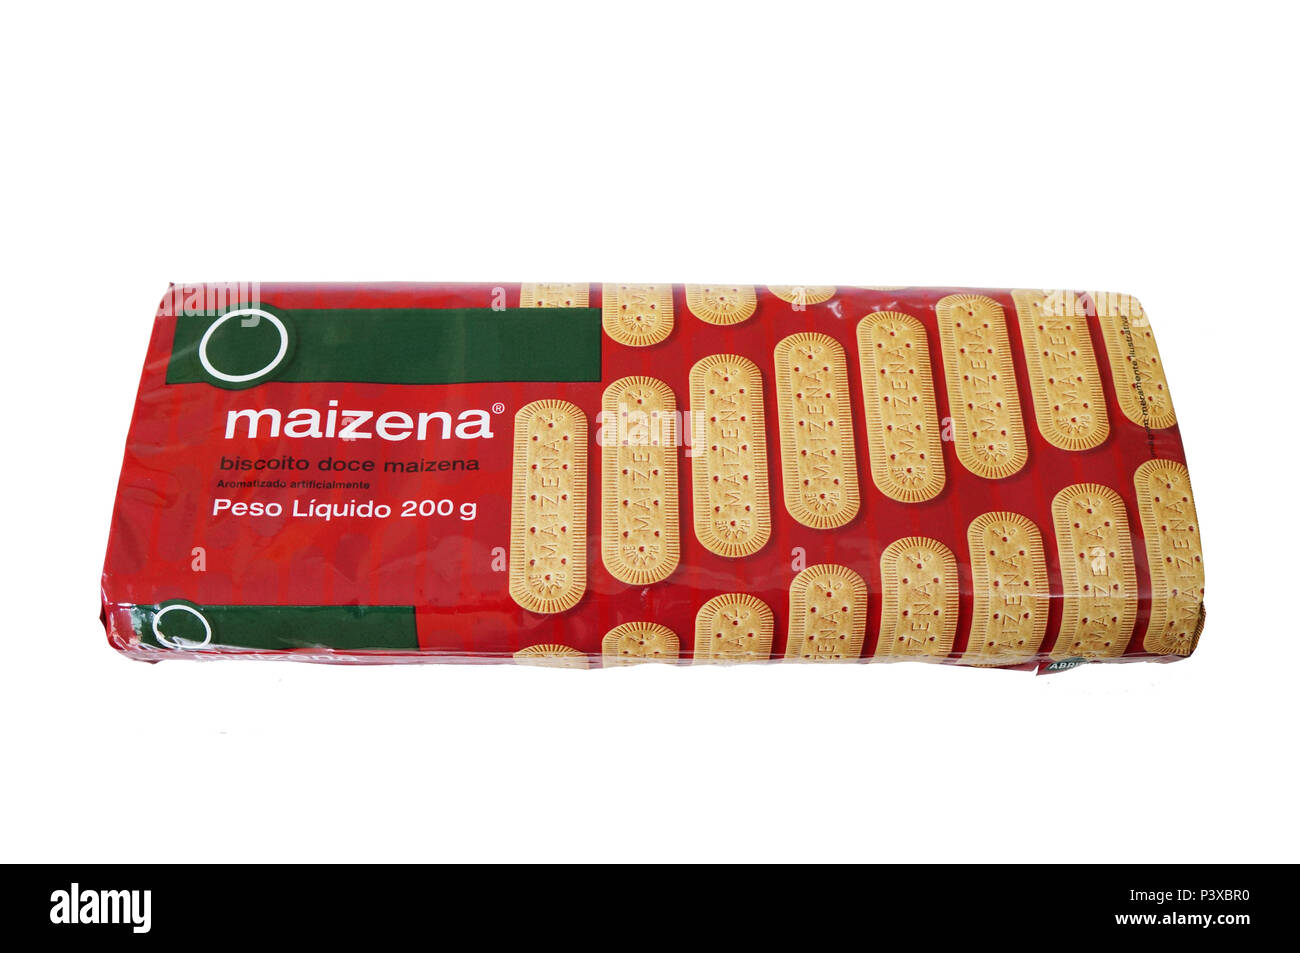 Pacote de biscoitos/bolachas de amido de milho (maizena) com marca descaracterizada em fundo branco. Stock Photo